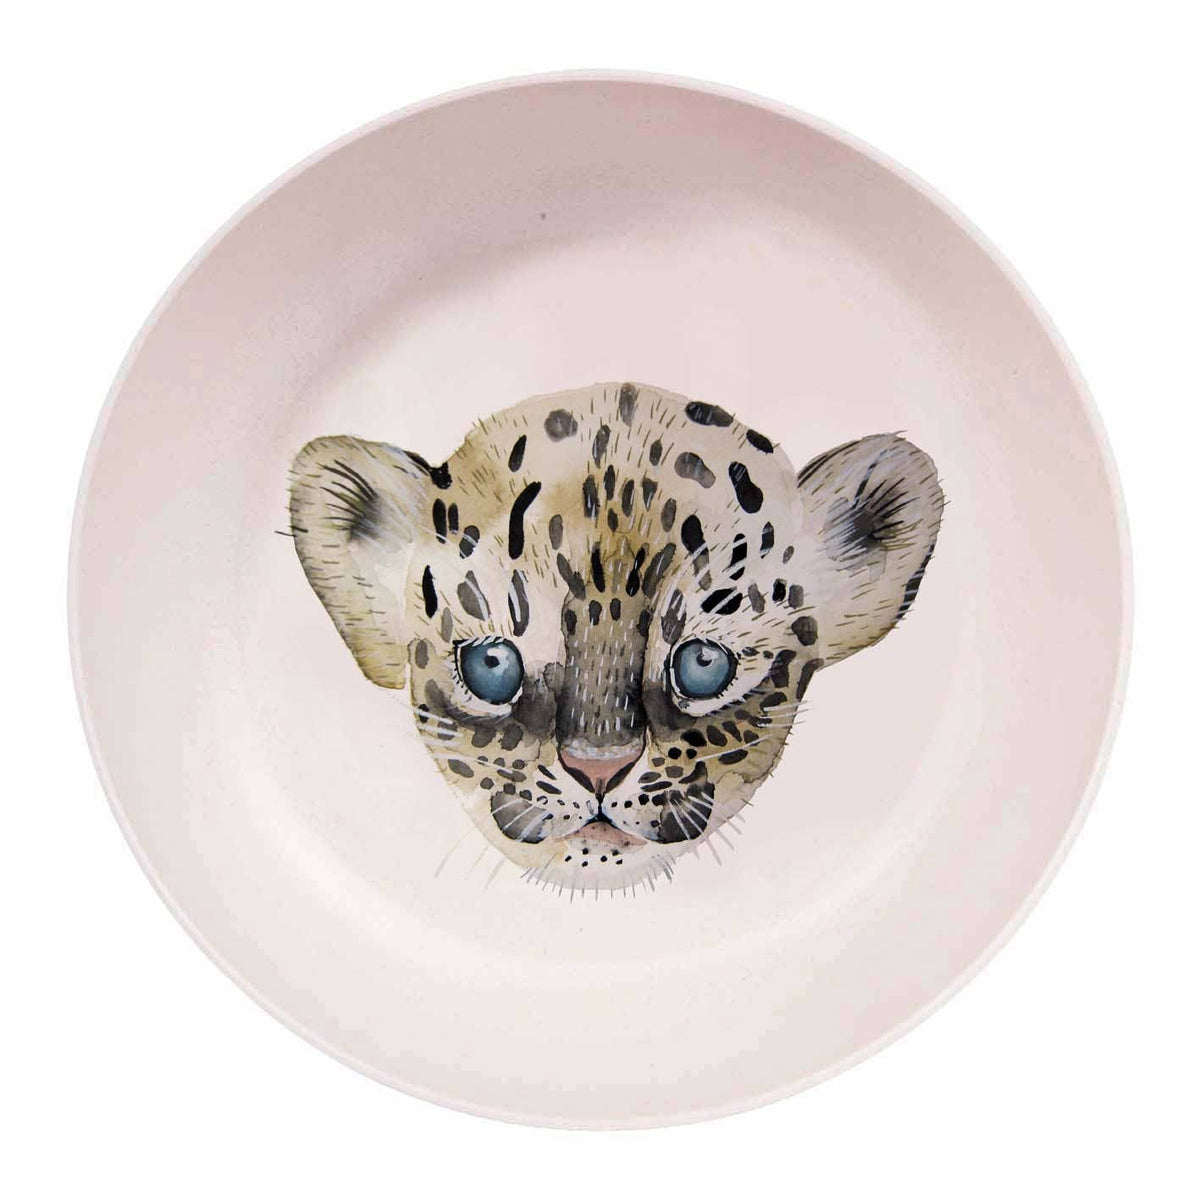 Leopard bowl